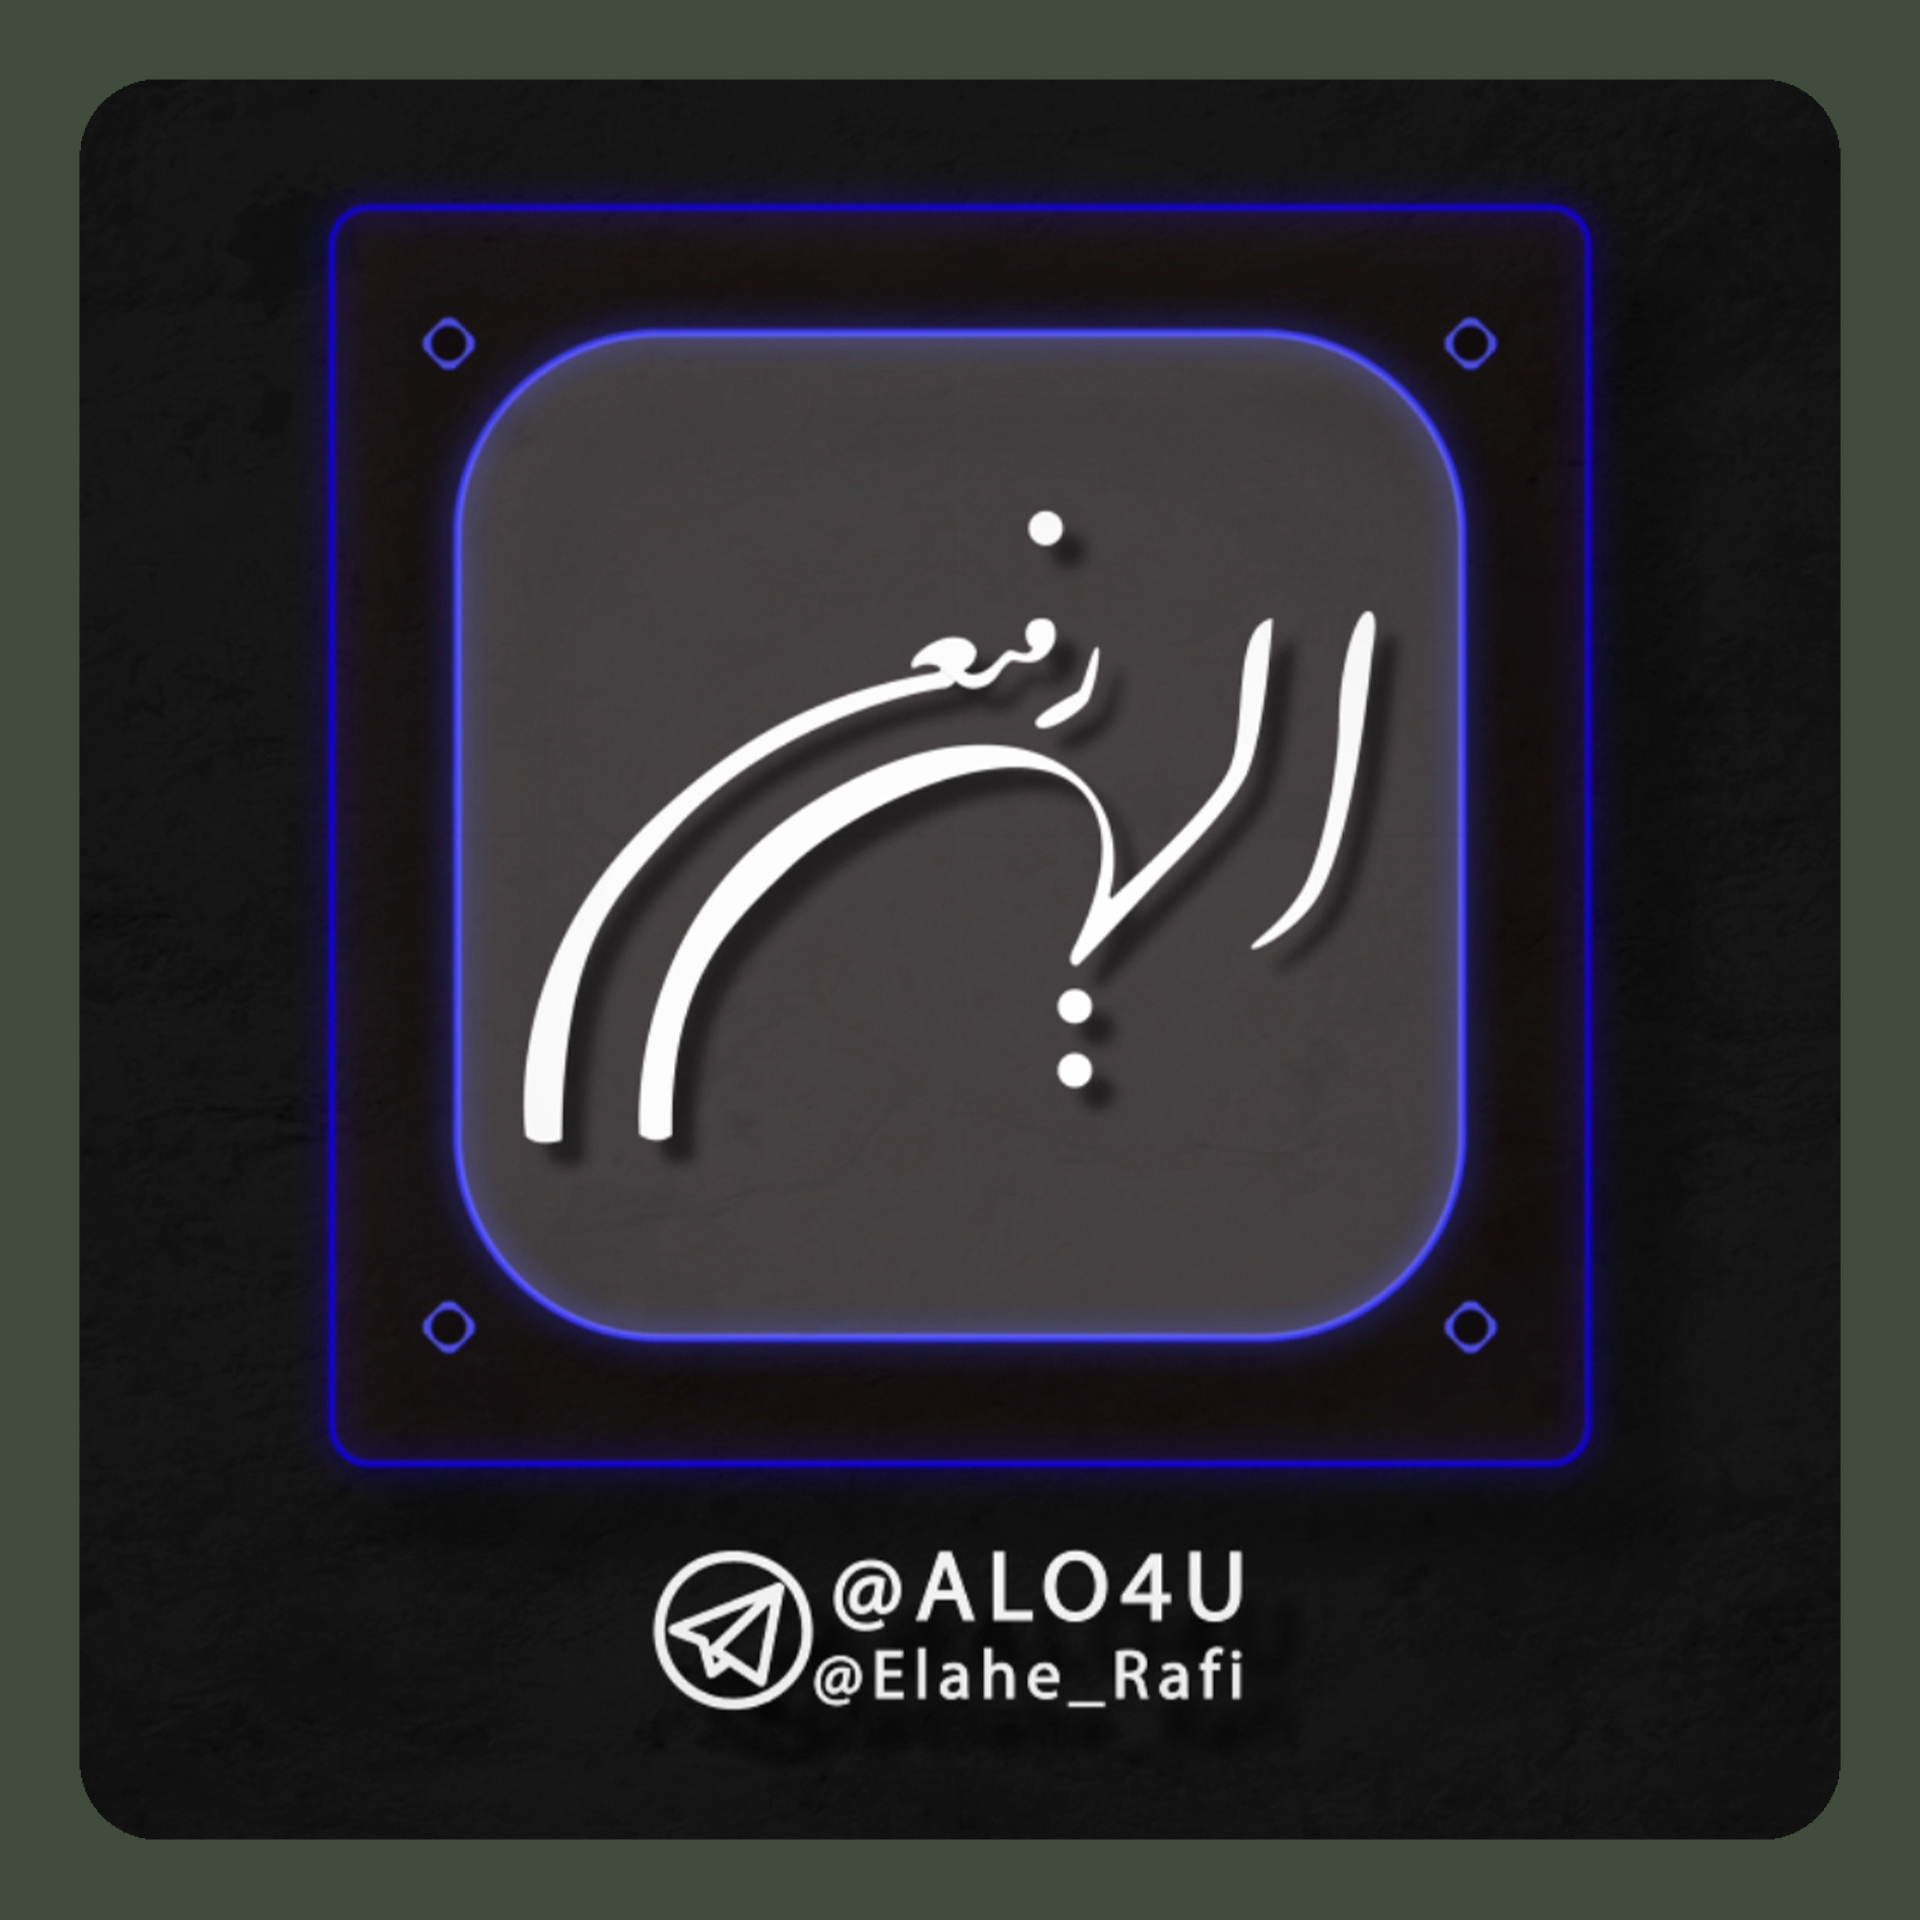 Elahe Rafi Logo Motion